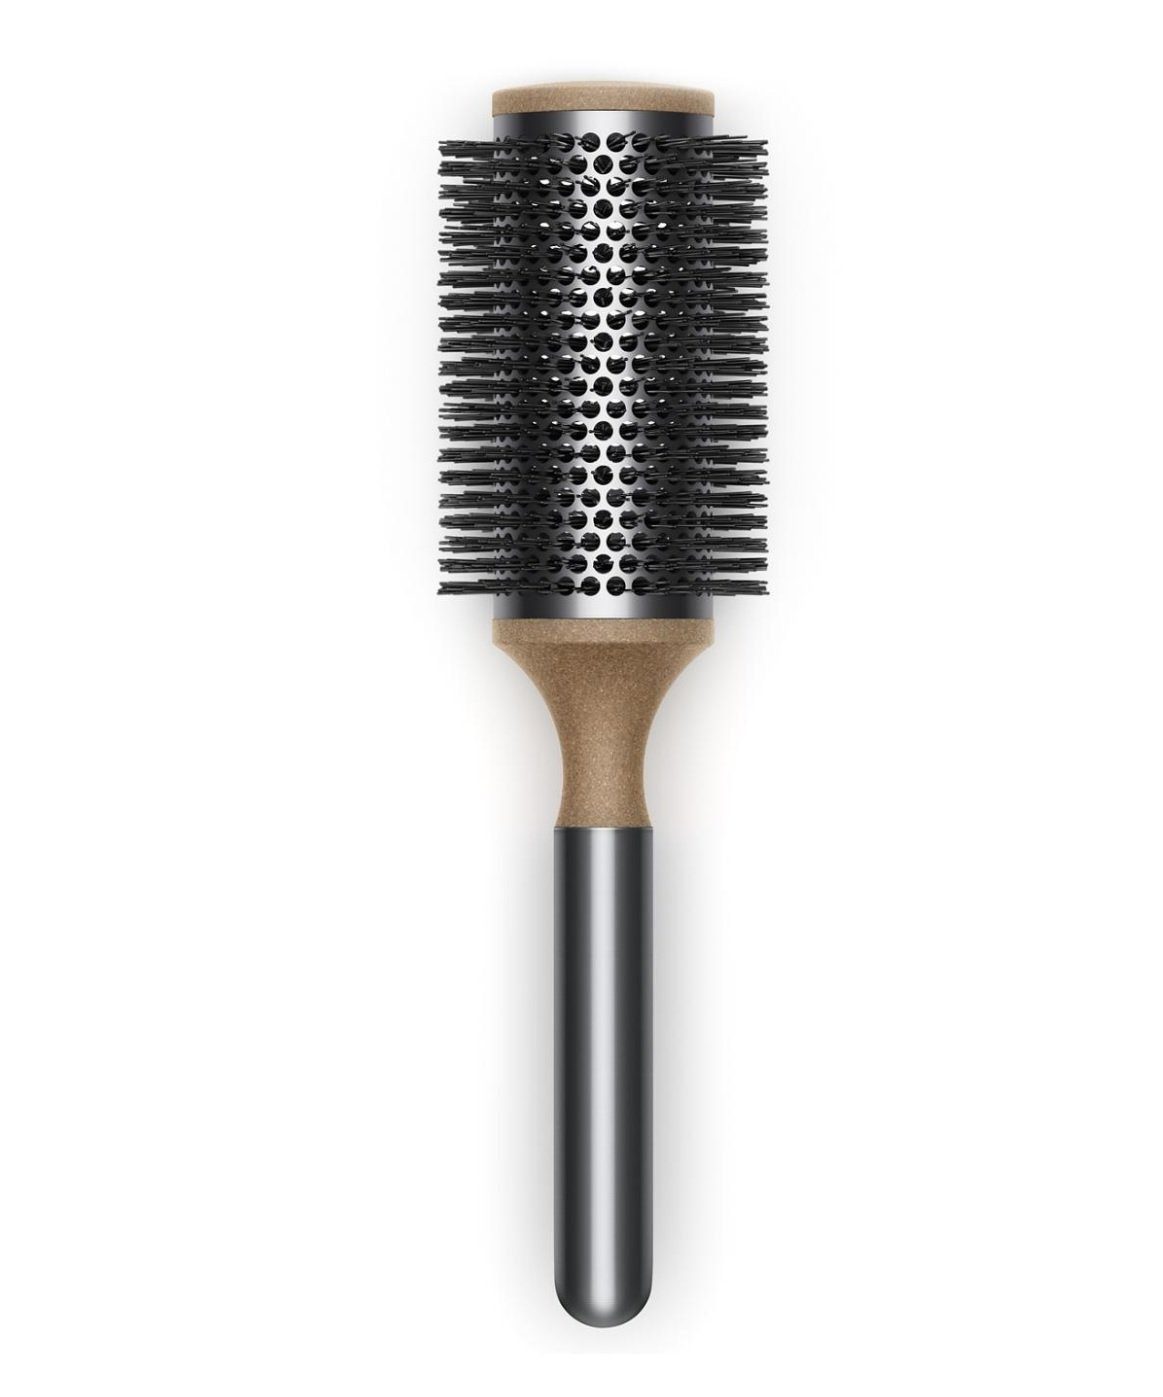 DYSON Stylingbürste Original Volumenbürste, Haarbürste Mittellanges bis langes Haar, runde Bürste Haare, Zylinder Luftdurchlässig